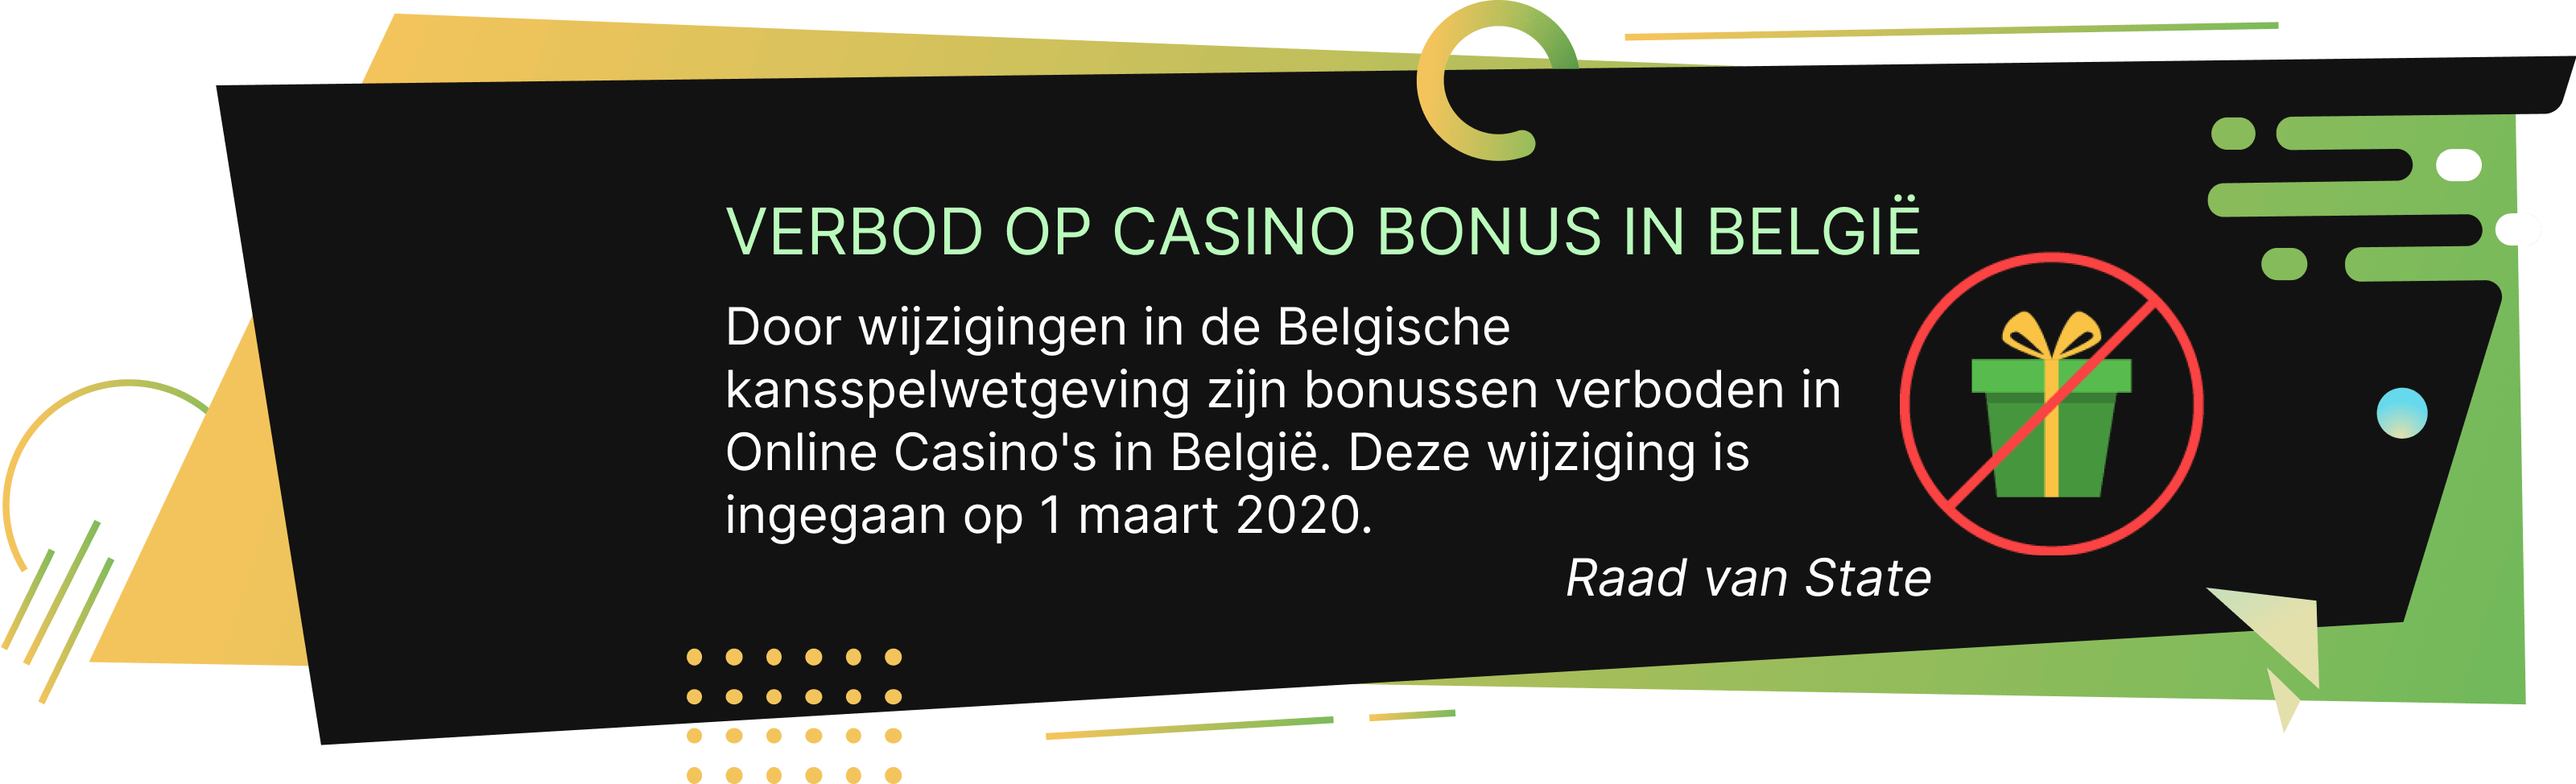 Op zoek naar een Casino Welkomstbonus in België Zijn Bonussen Verboden